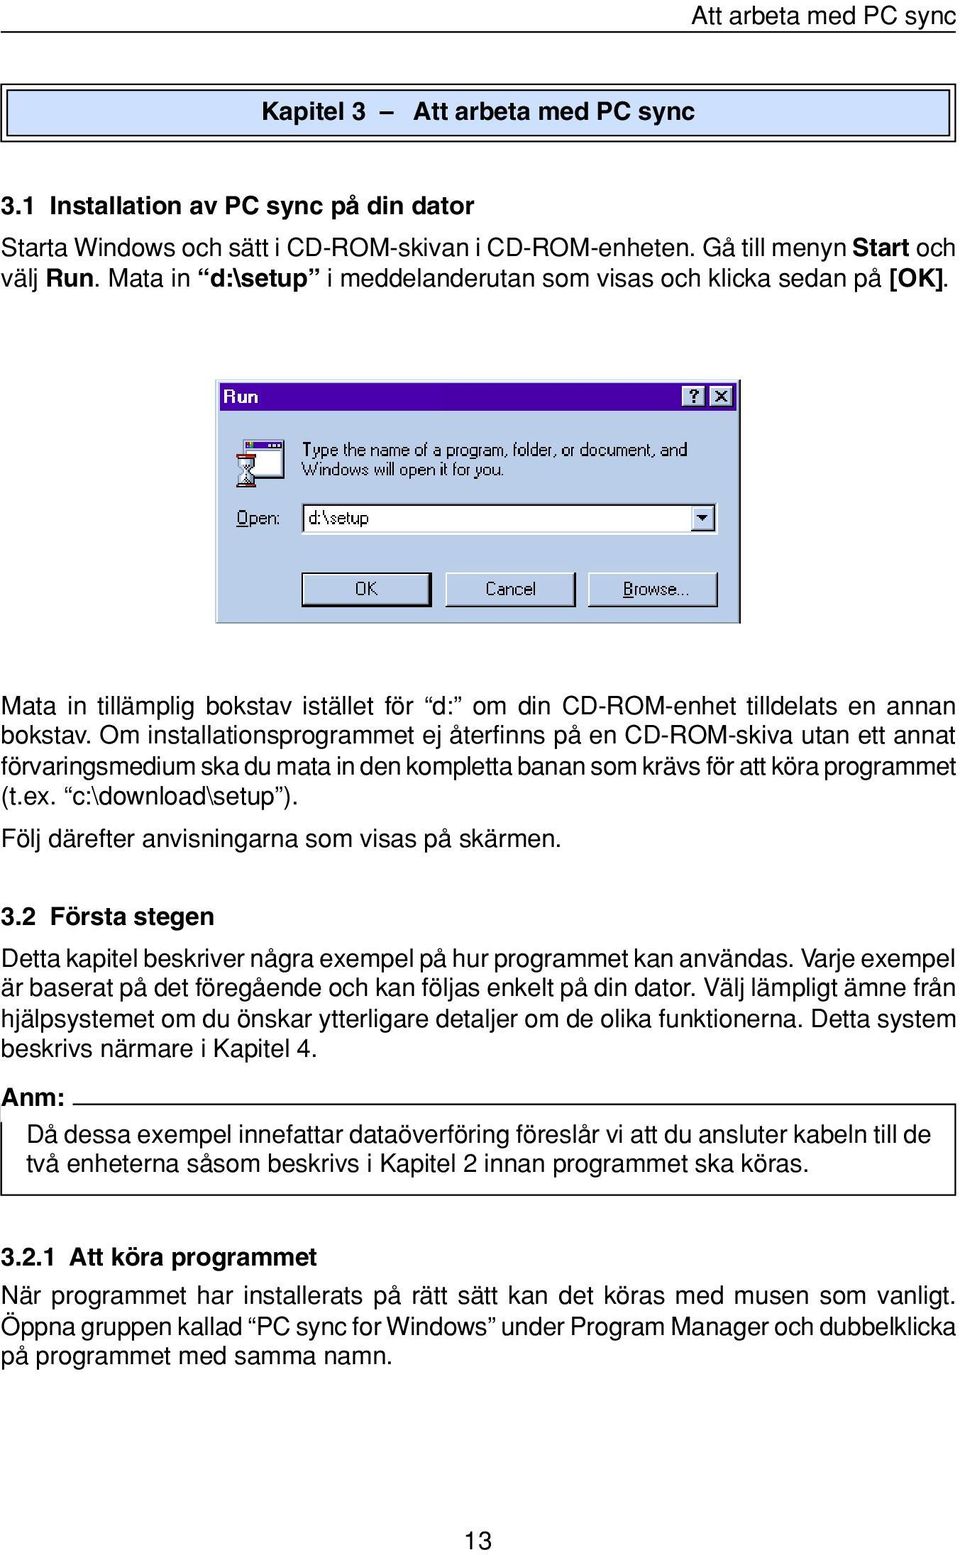 Om installationsprogrammet ej återfinns på en CD-ROM-skiva utan ett annat förvaringsmedium ska du mata in den kompletta banan som krävs för att köra programmet (t.ex. c:\download\setup ).